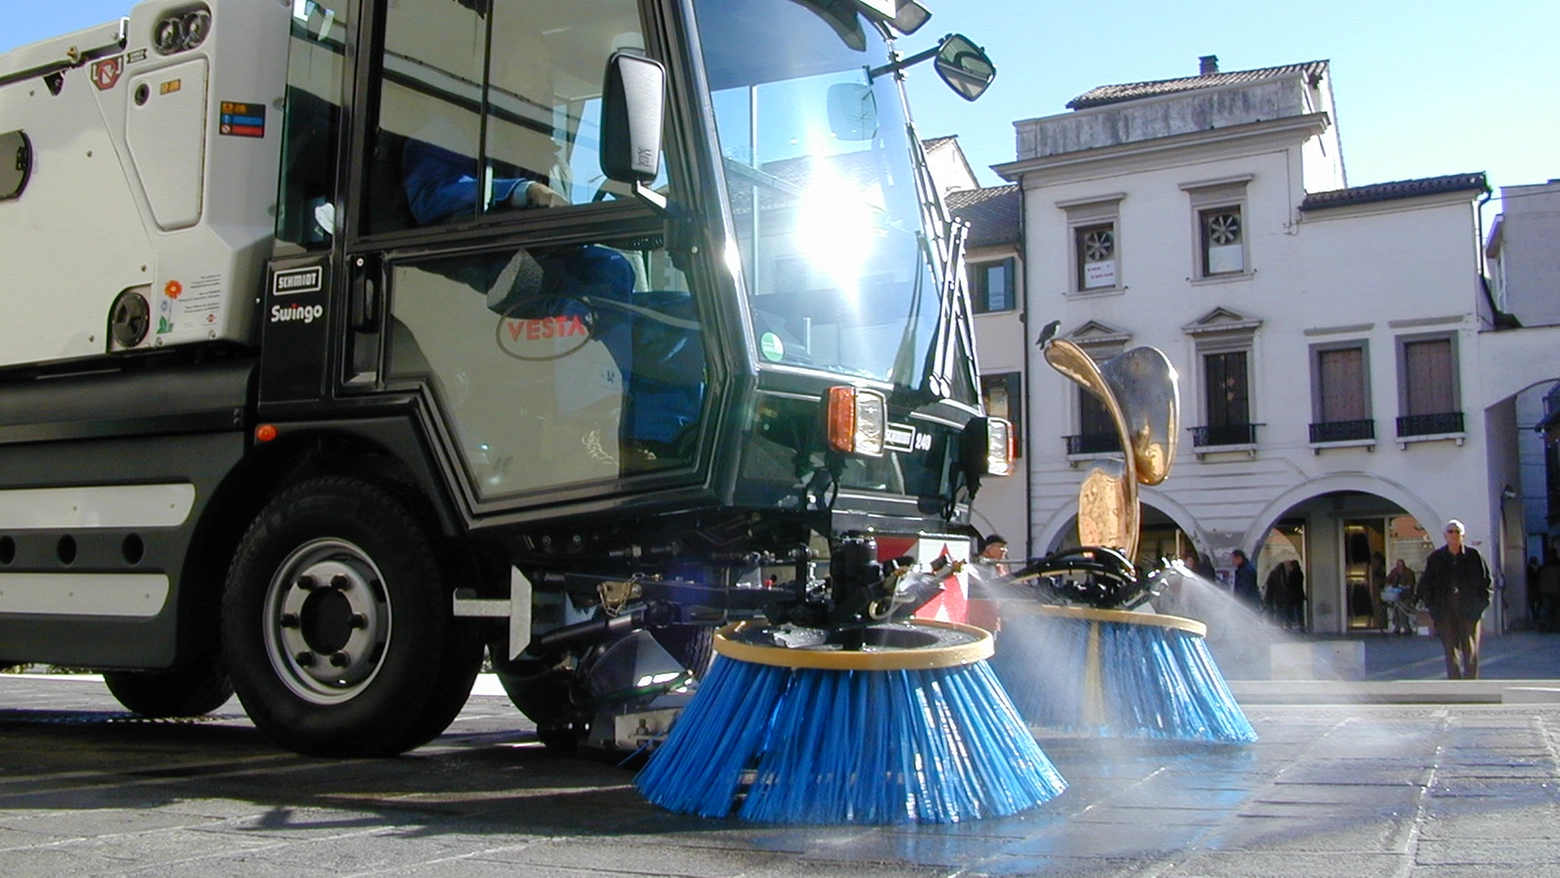 Servizi di igiene urbana a Mestre svolti da Veritas (foto media dal sito Gruppo Veritas)